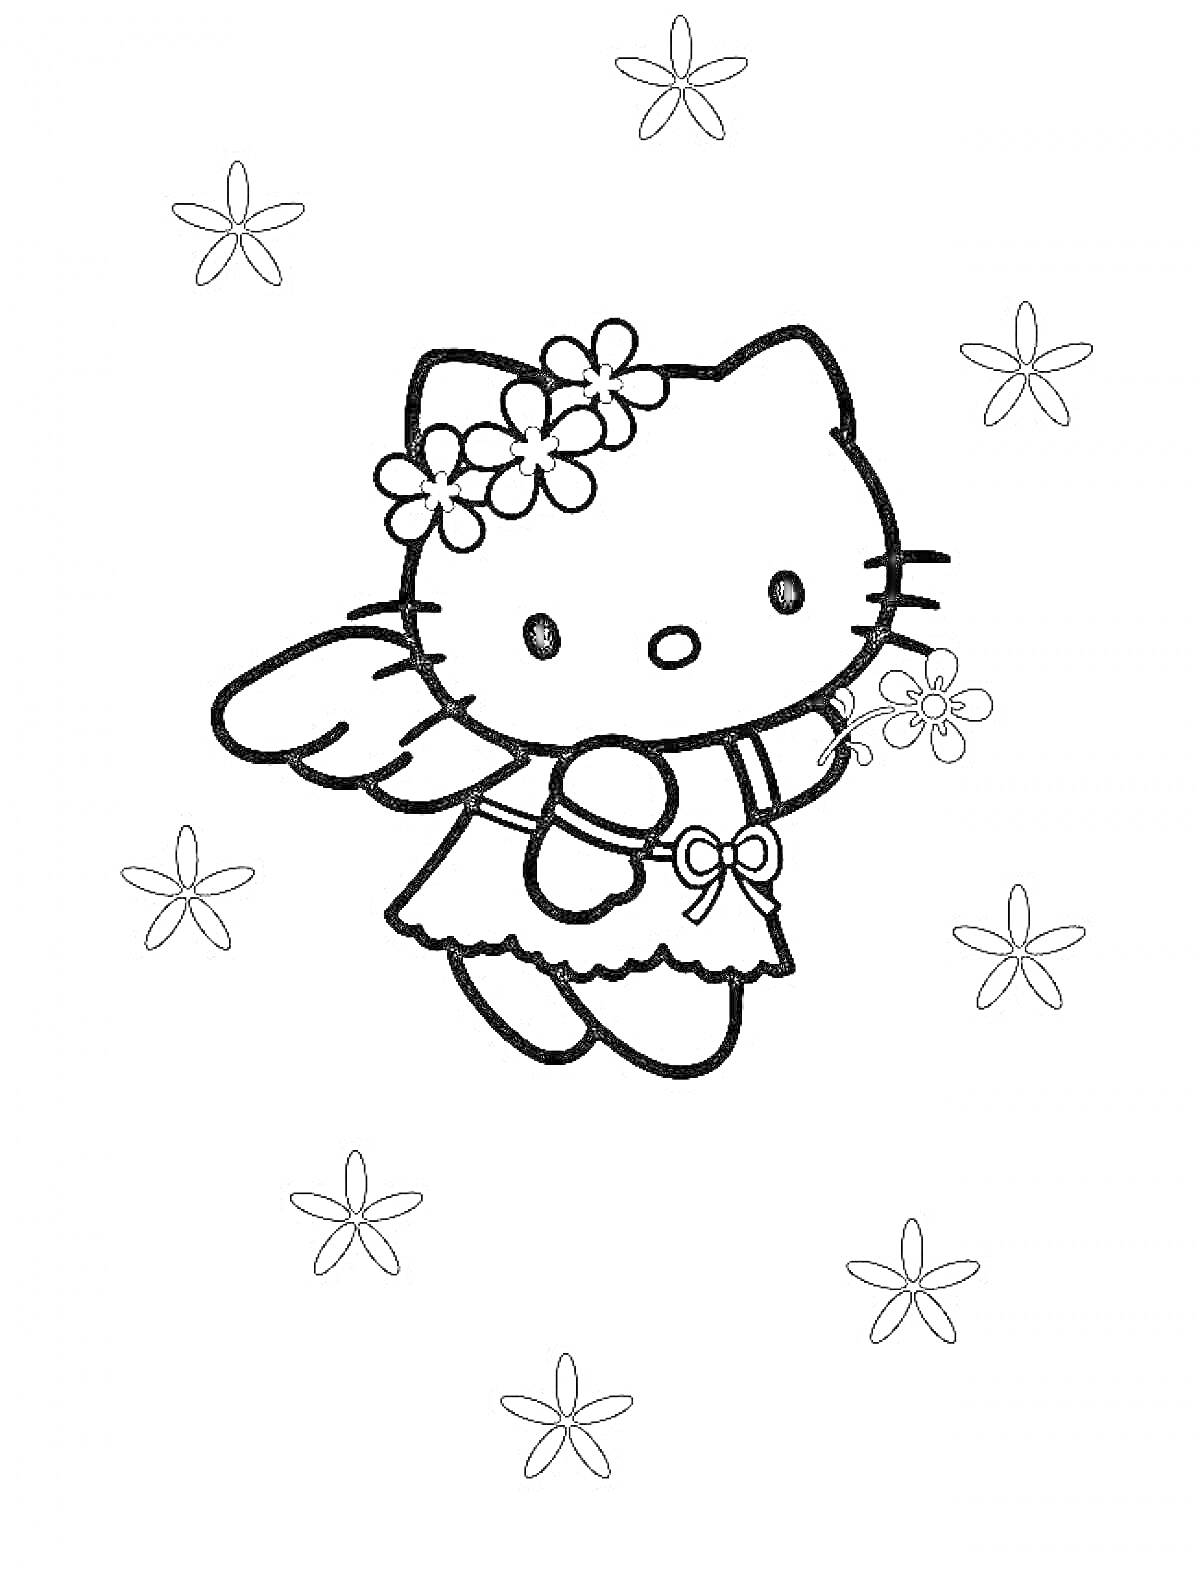 Раскраска Hello Kitty с цветами в волосах, крыльями и цветочной повязкой окружена цветами.